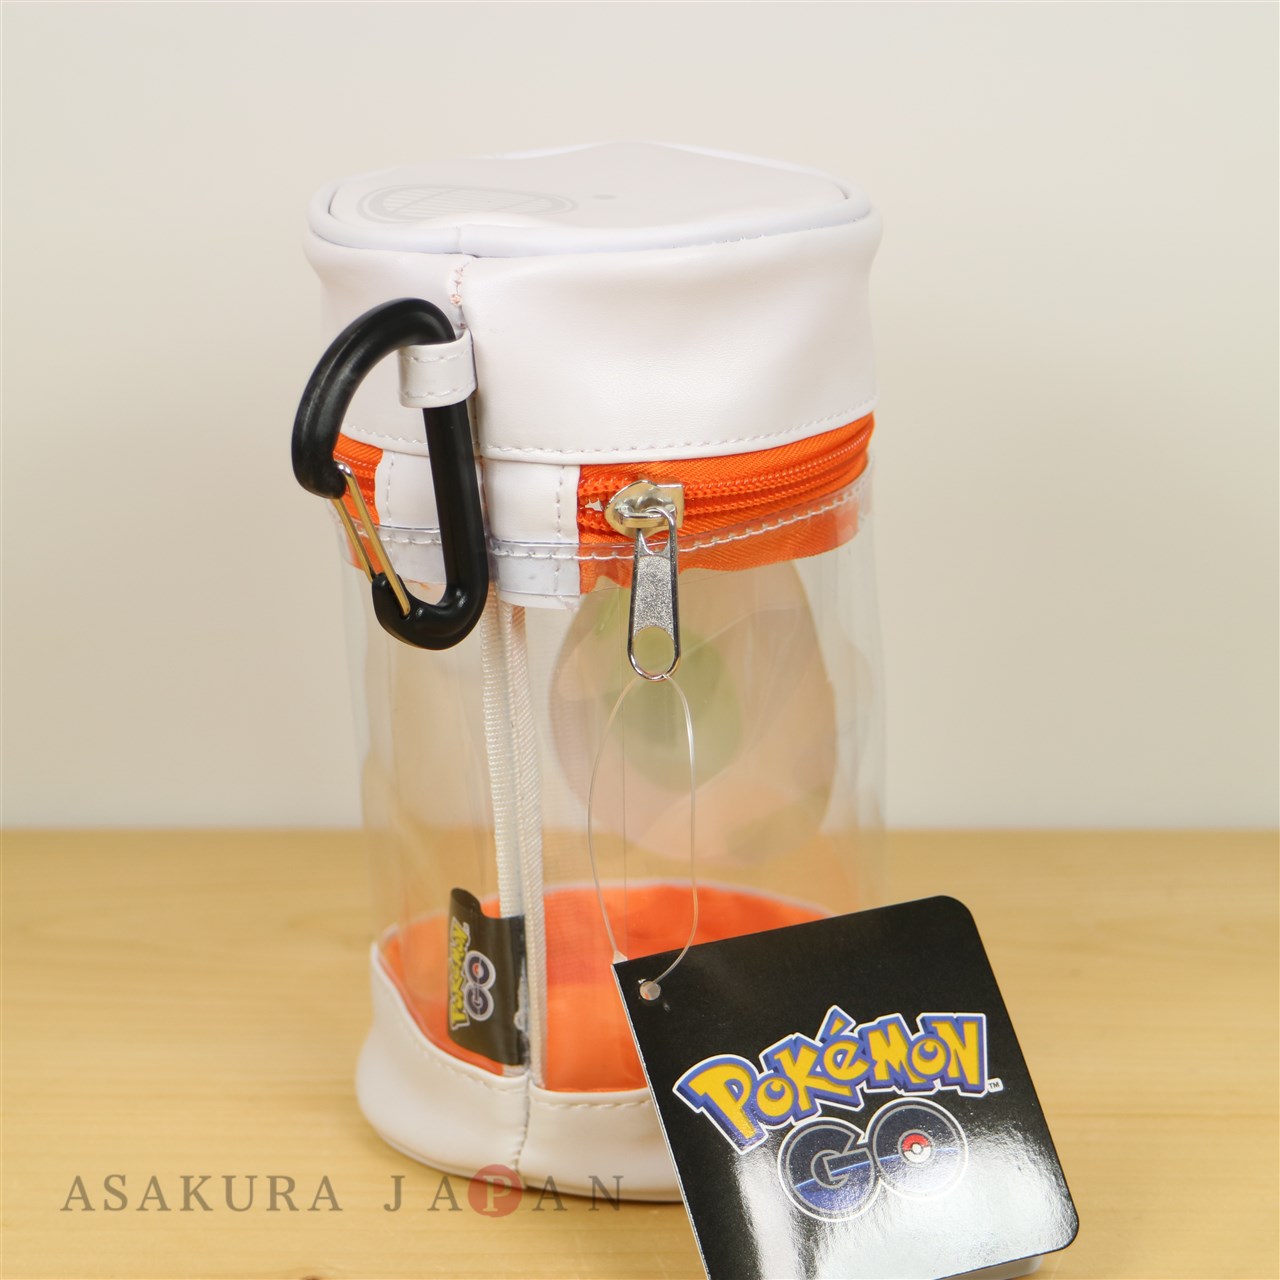 Pokémon GO Trainer Gear: Egg Incubator Bag